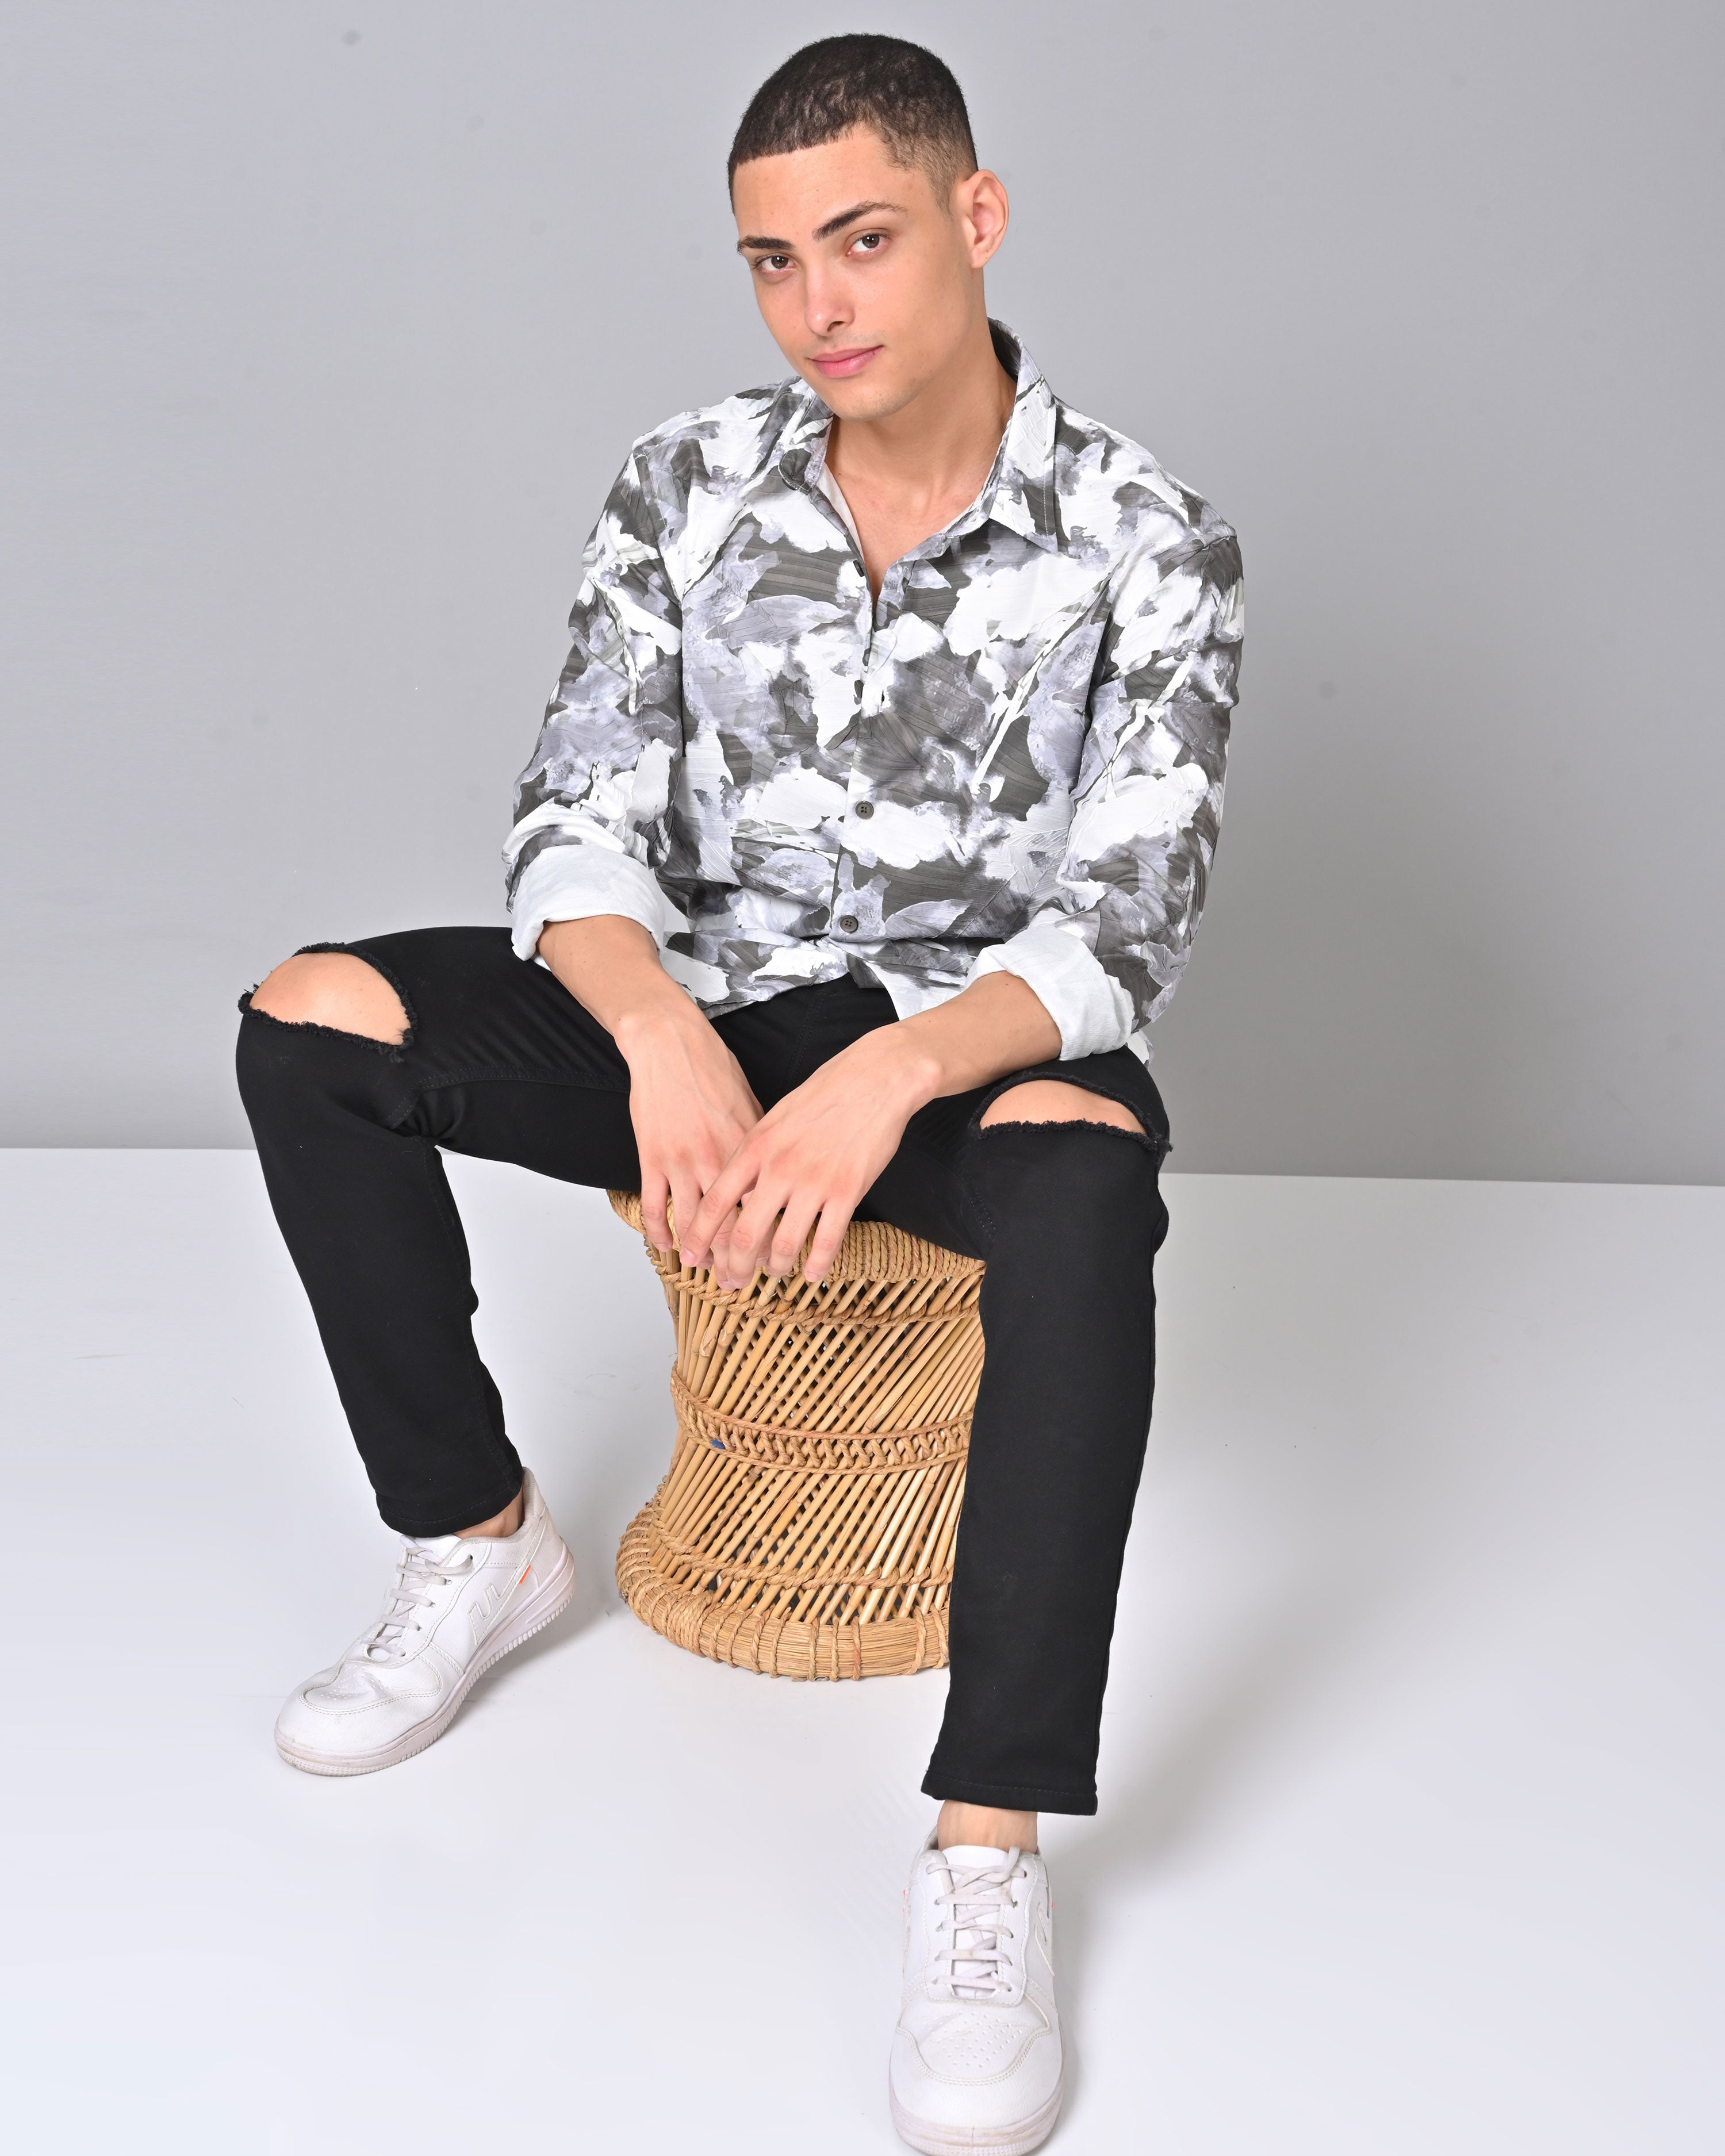 Men's Abstract White Full Sleeve Tencel Shirt Online